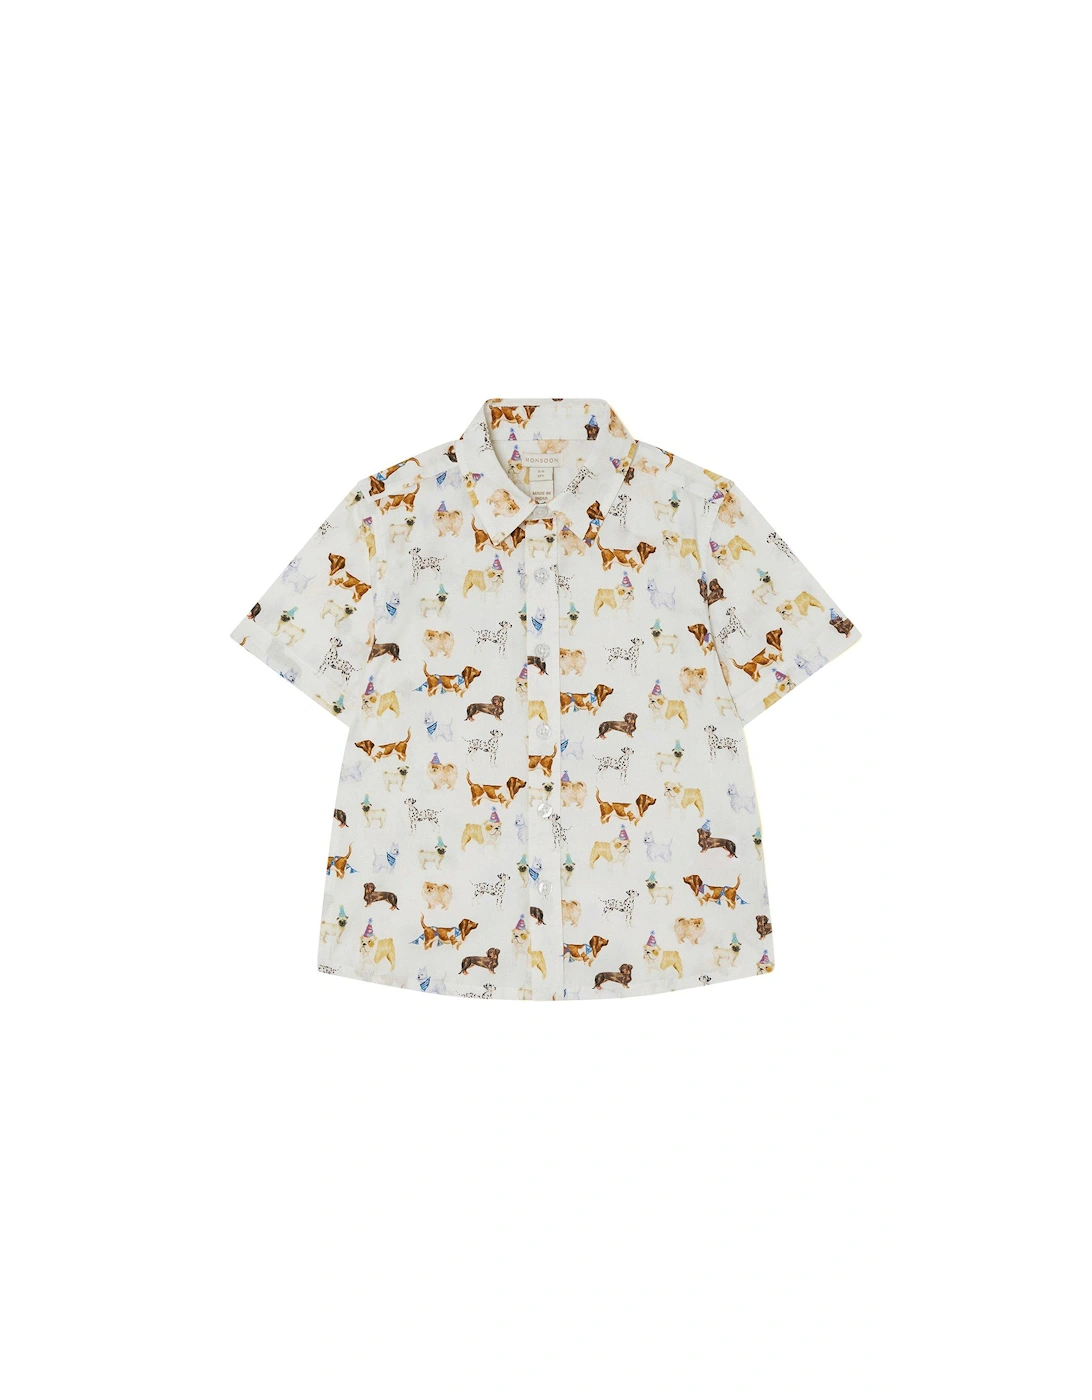 Boys Dog Shirt - Ivory, 2 of 1